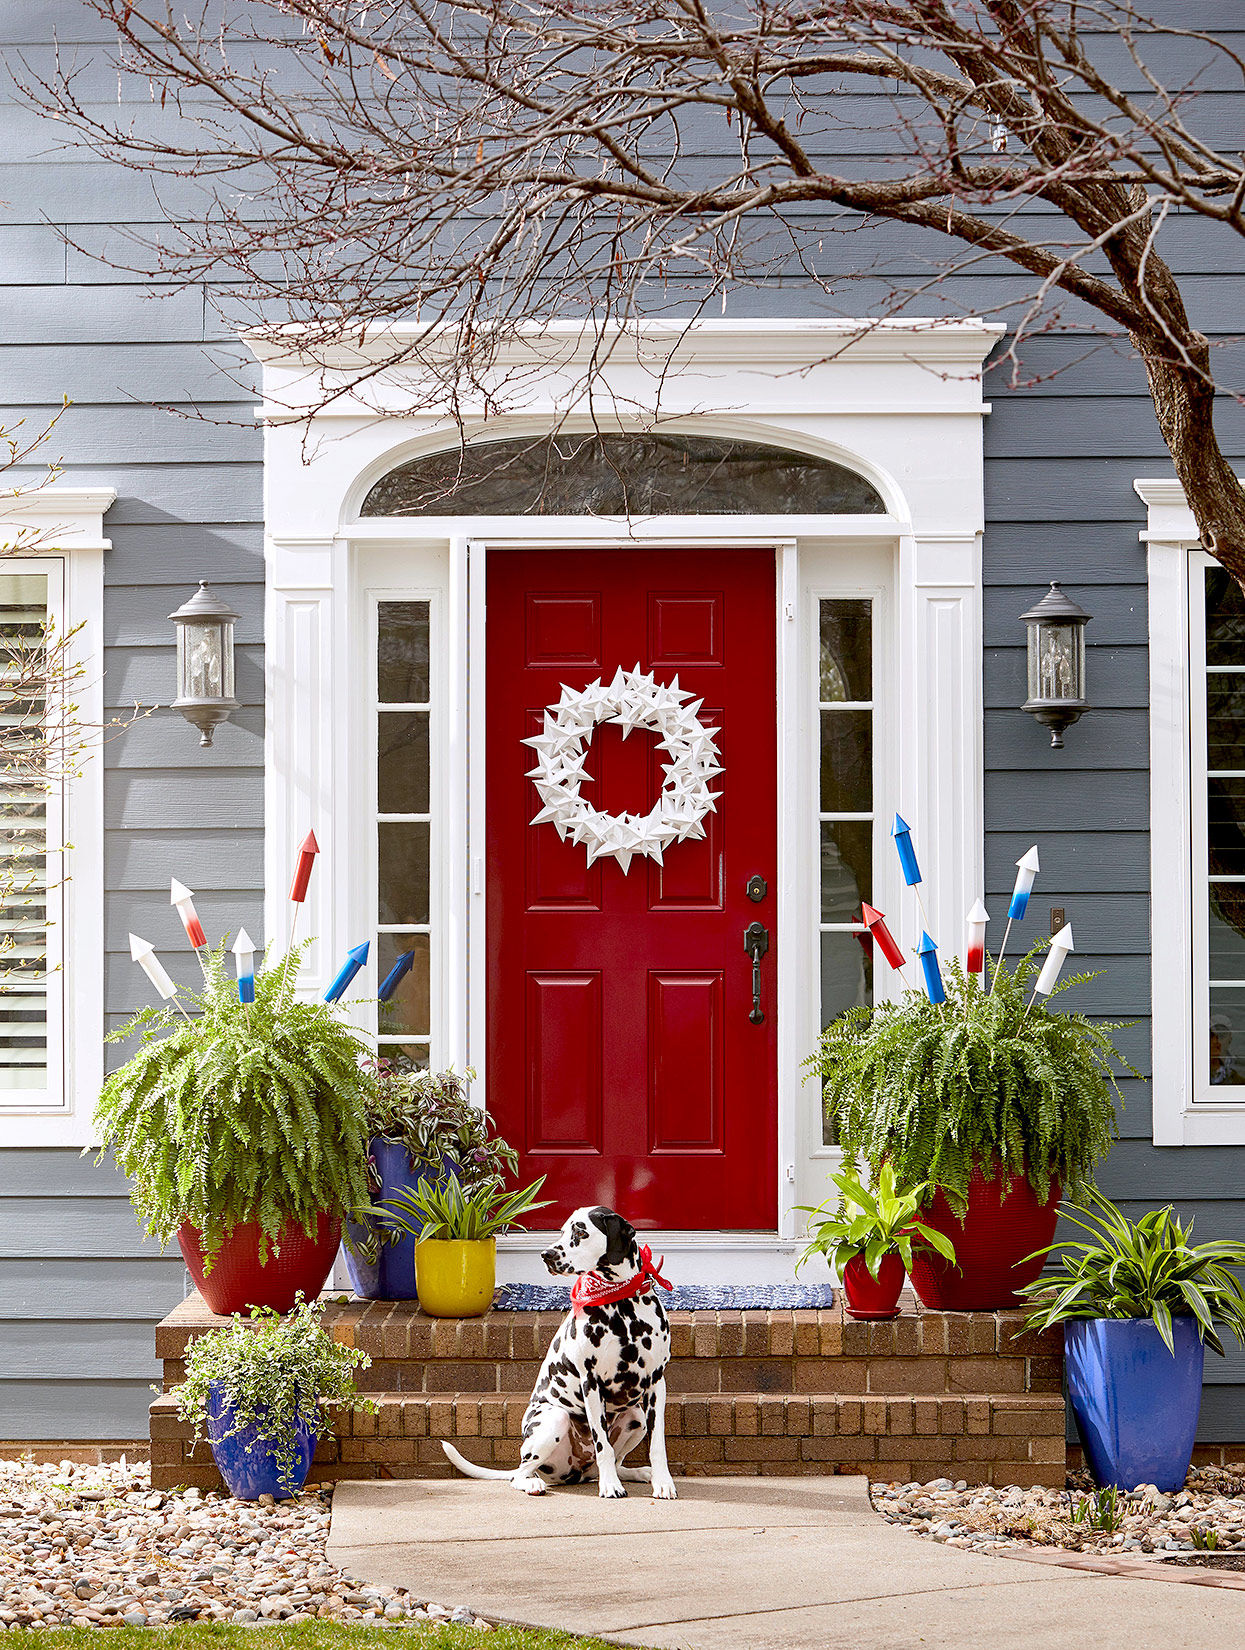 Thiết kế trang trí cửa nhà ấn tượng và nổi bật với sắc đỏ và chậu cây